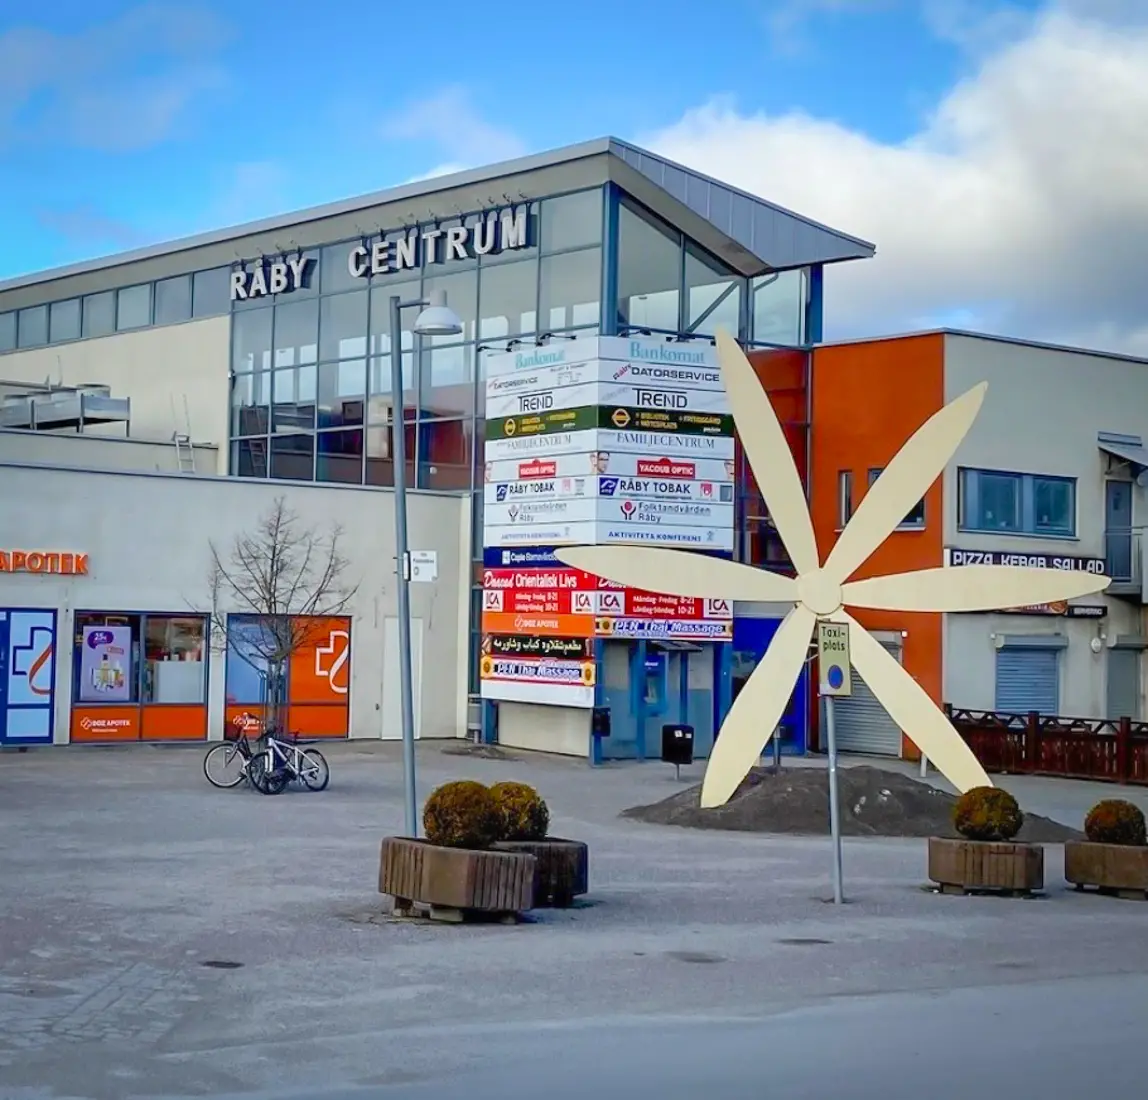 Gallerian i Råby centrum har en ljusgrå putsad fasad längst ner och höga glaspartier högst upp. På ena sidan står texten Råby centrum. I förgrunden syns en stor dekoration i form av en ljusgul blomma med sex kronblad. Det står två cyklar lutade mot ett träd.